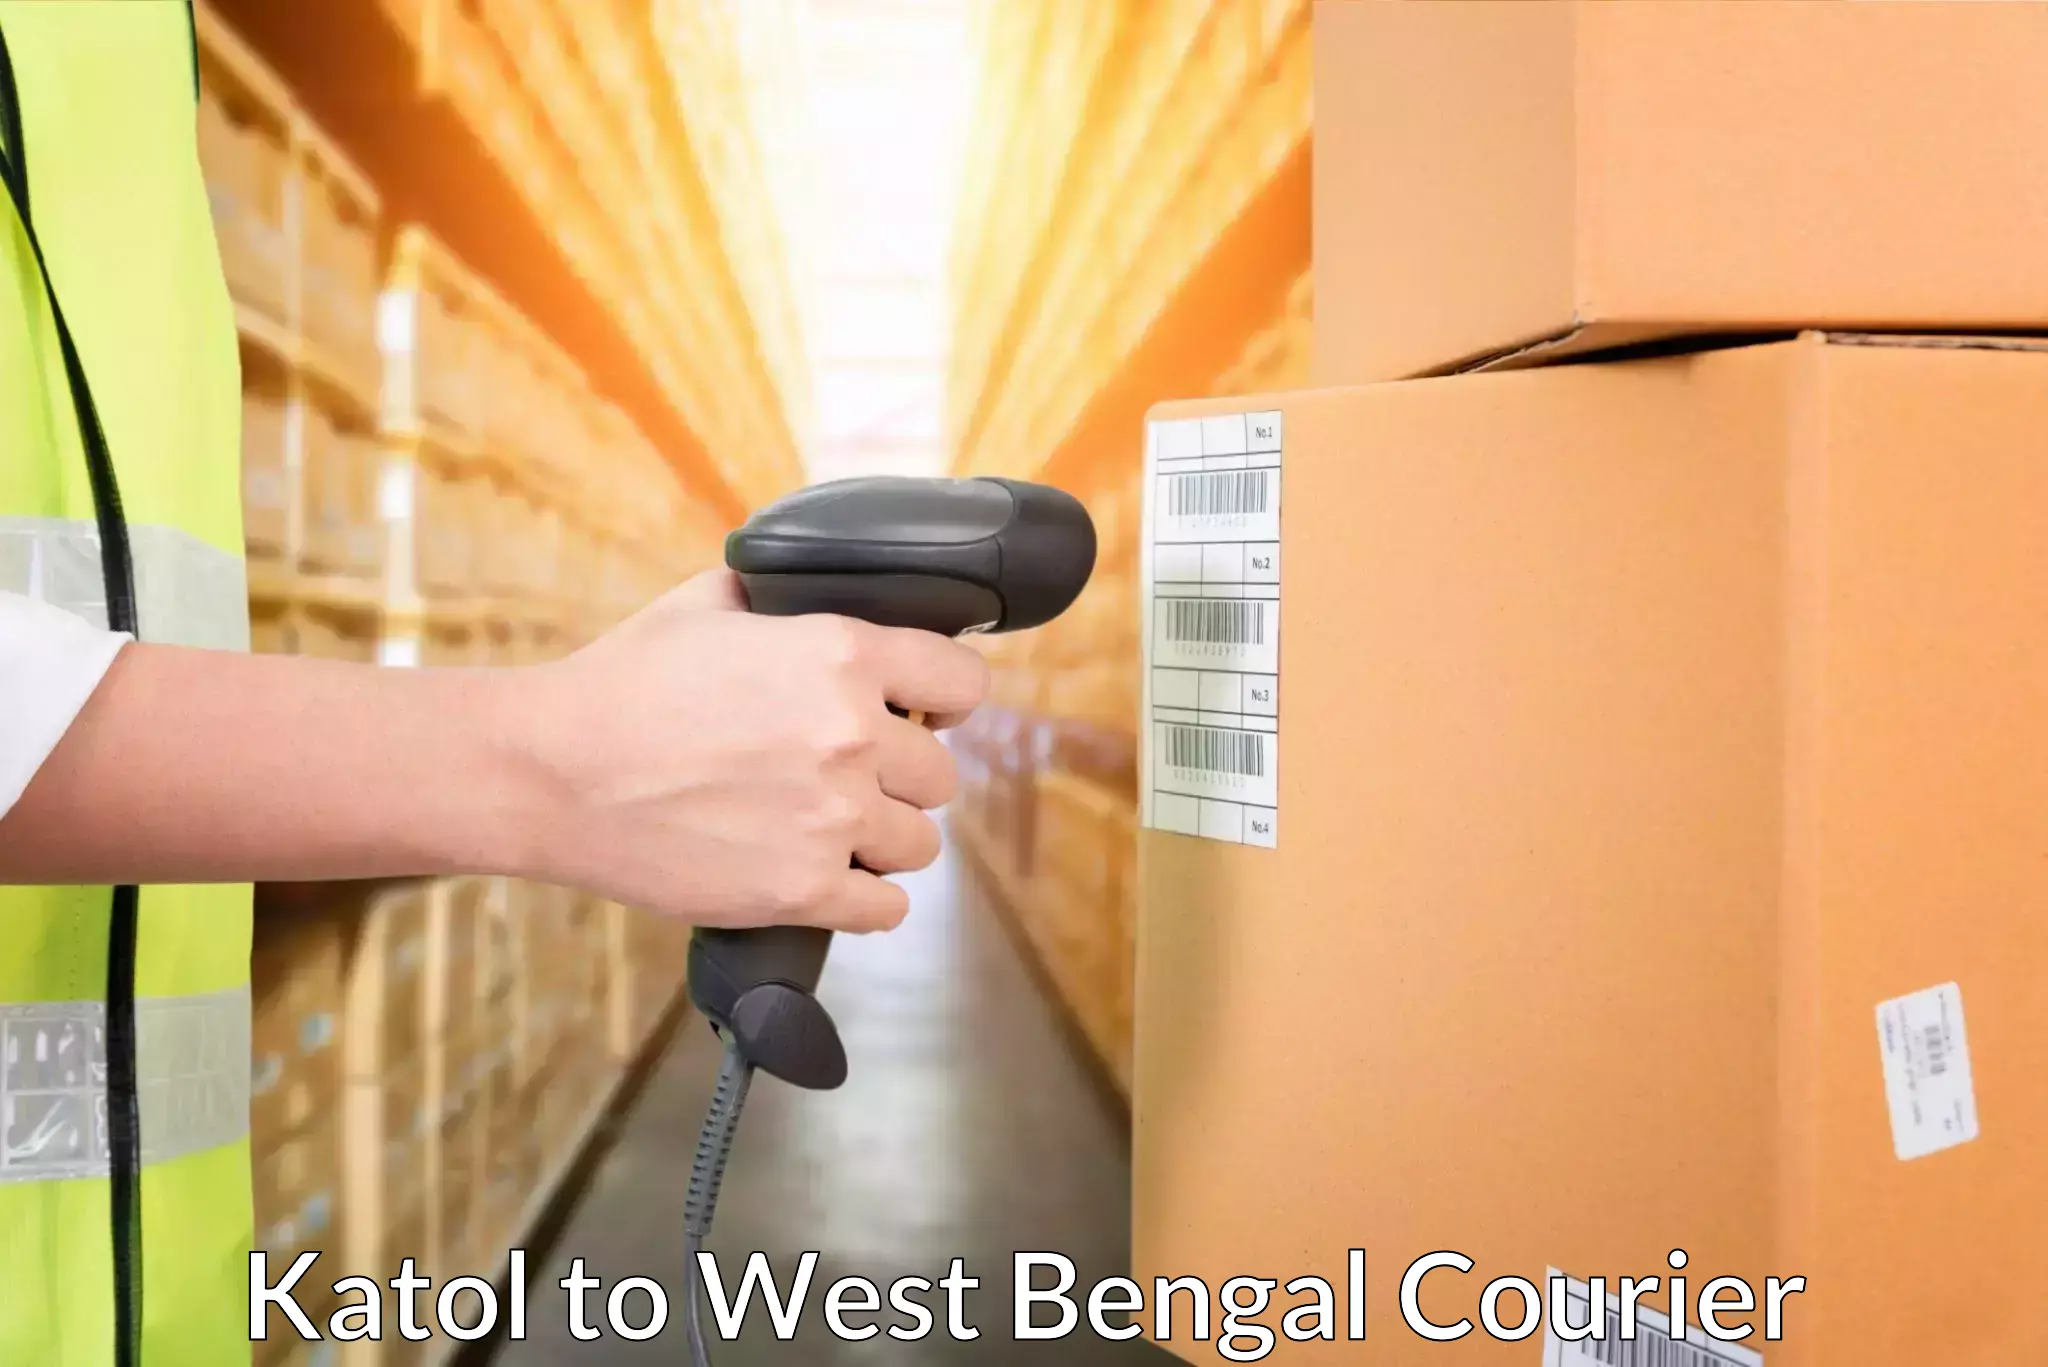 Customer-oriented courier services Katol to Swarupnagar